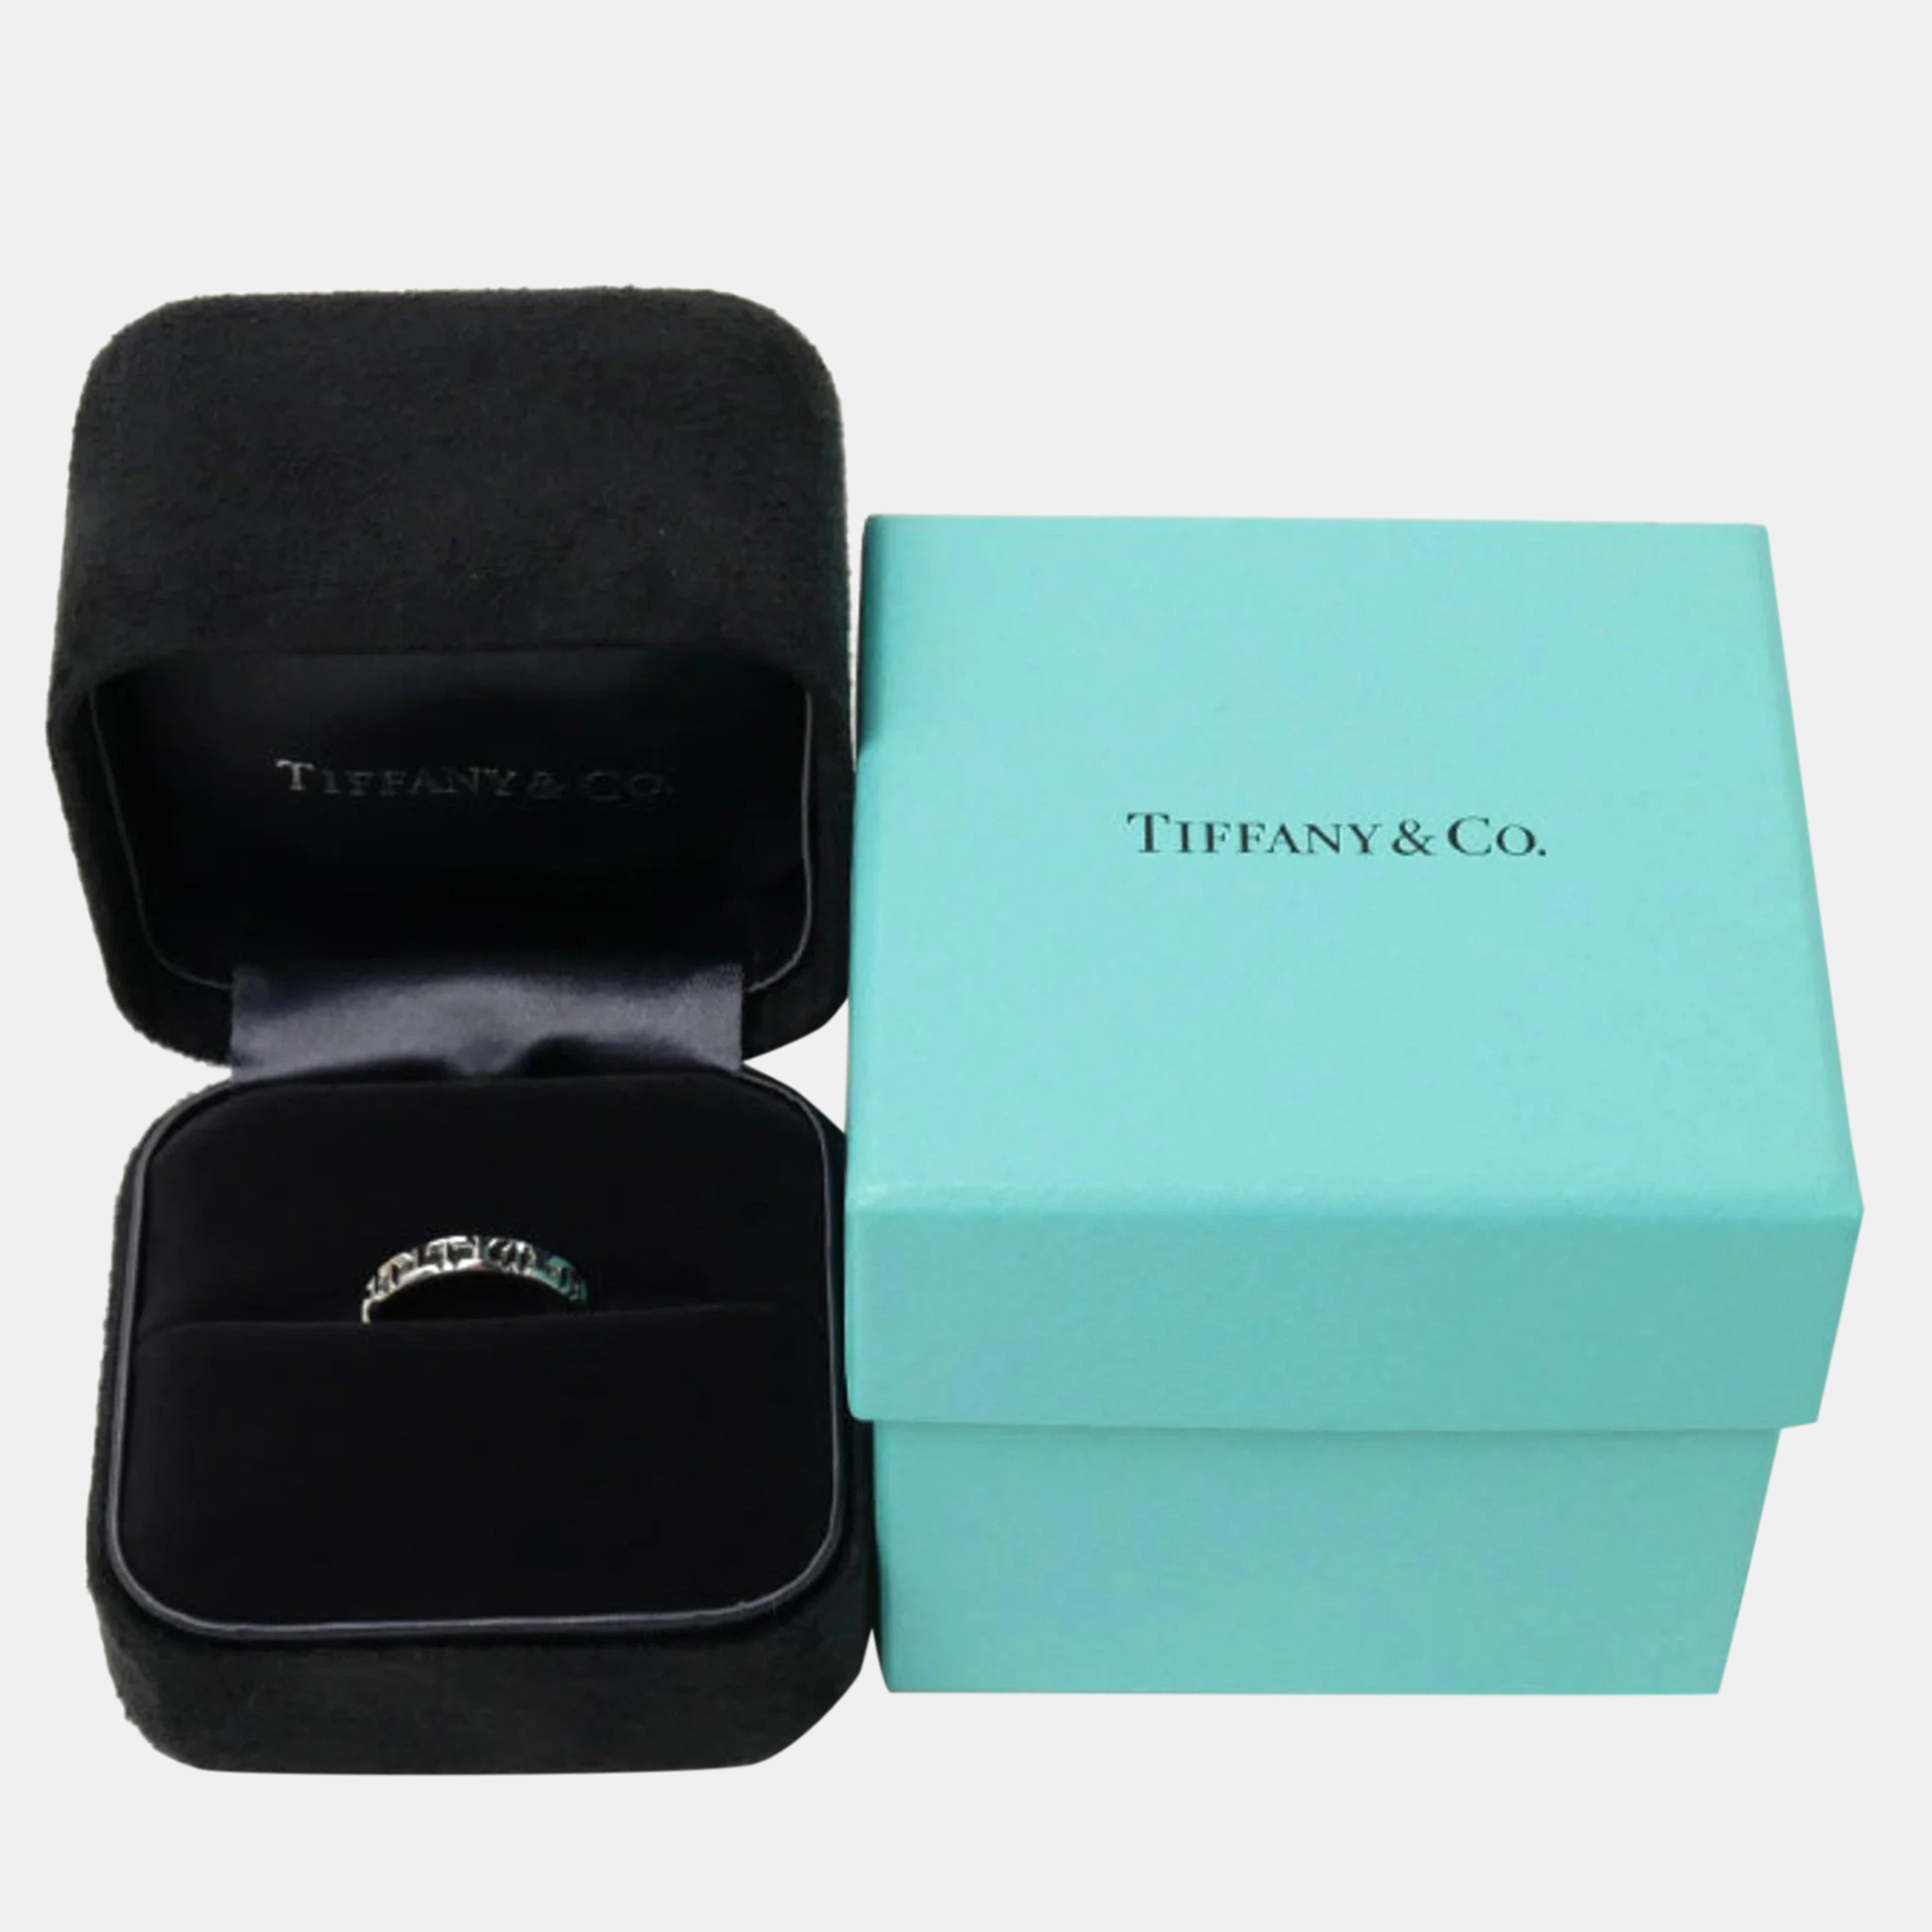 Tiffany & Co. 18K White Gold Tiffany T True Narrow Ring EU 48